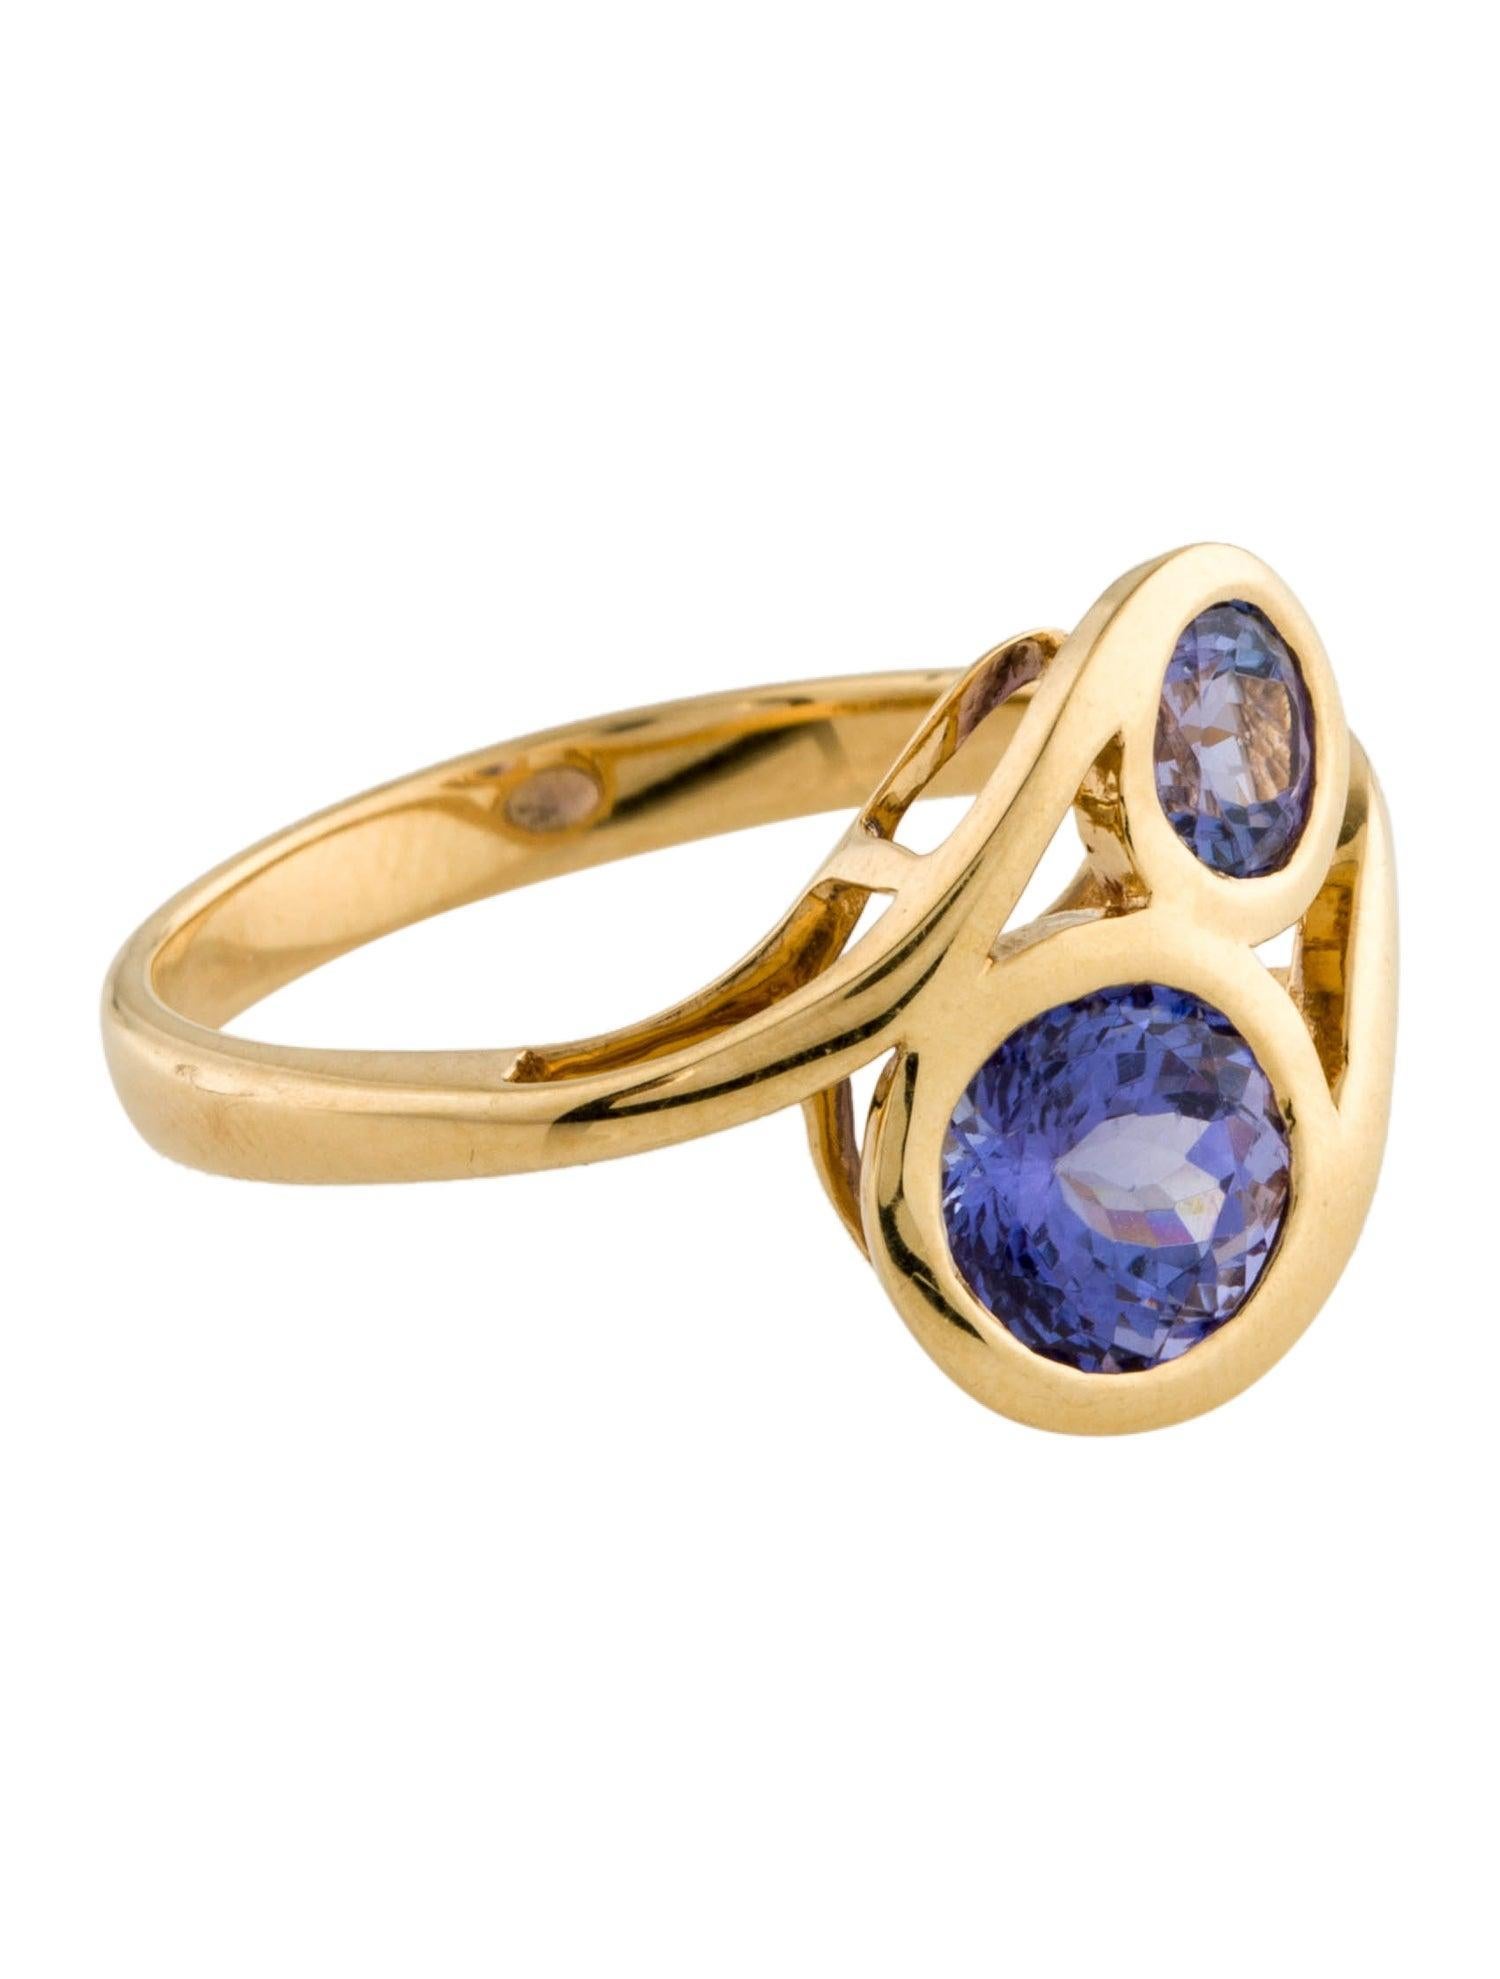 Wir präsentieren den Inbegriff himmlischer Eleganz - den Celestial Splendor Tanzanite Ring aus unserer exklusiven Kollektion The Beauty of the Night Sky. Dieser mit akribischer Präzision und Leidenschaft für Perfektion gefertigte Ring ist eine